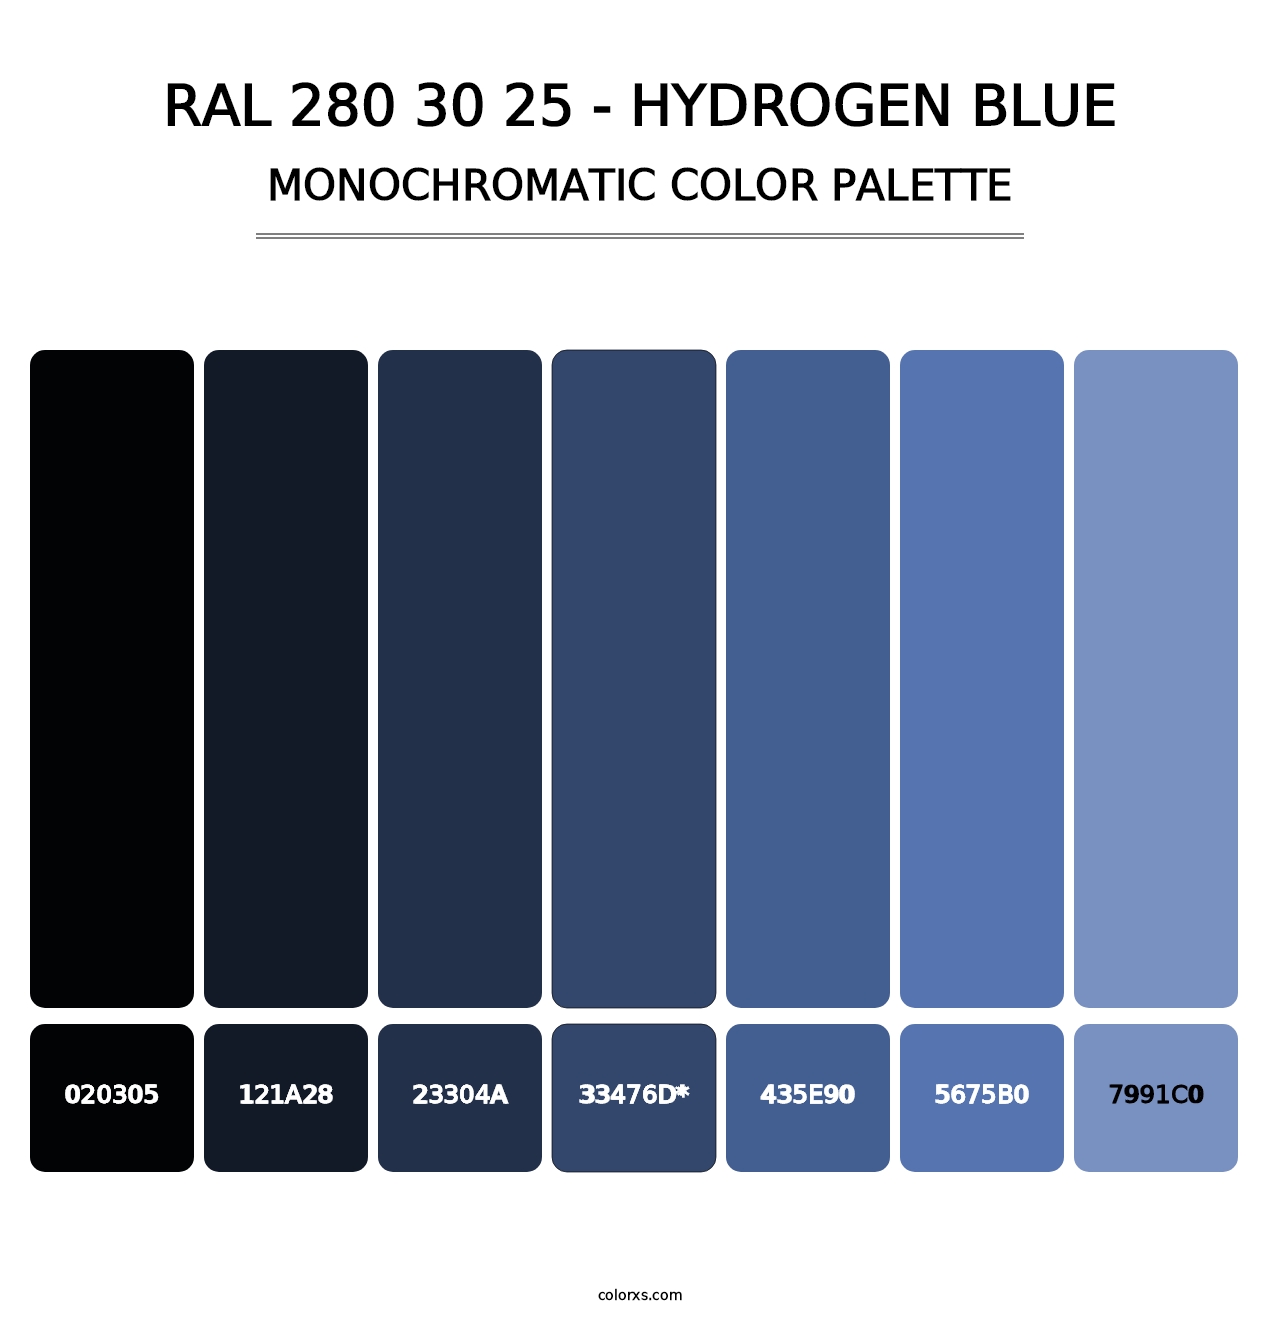 RAL 280 30 25 - Hydrogen Blue - Monochromatic Color Palette